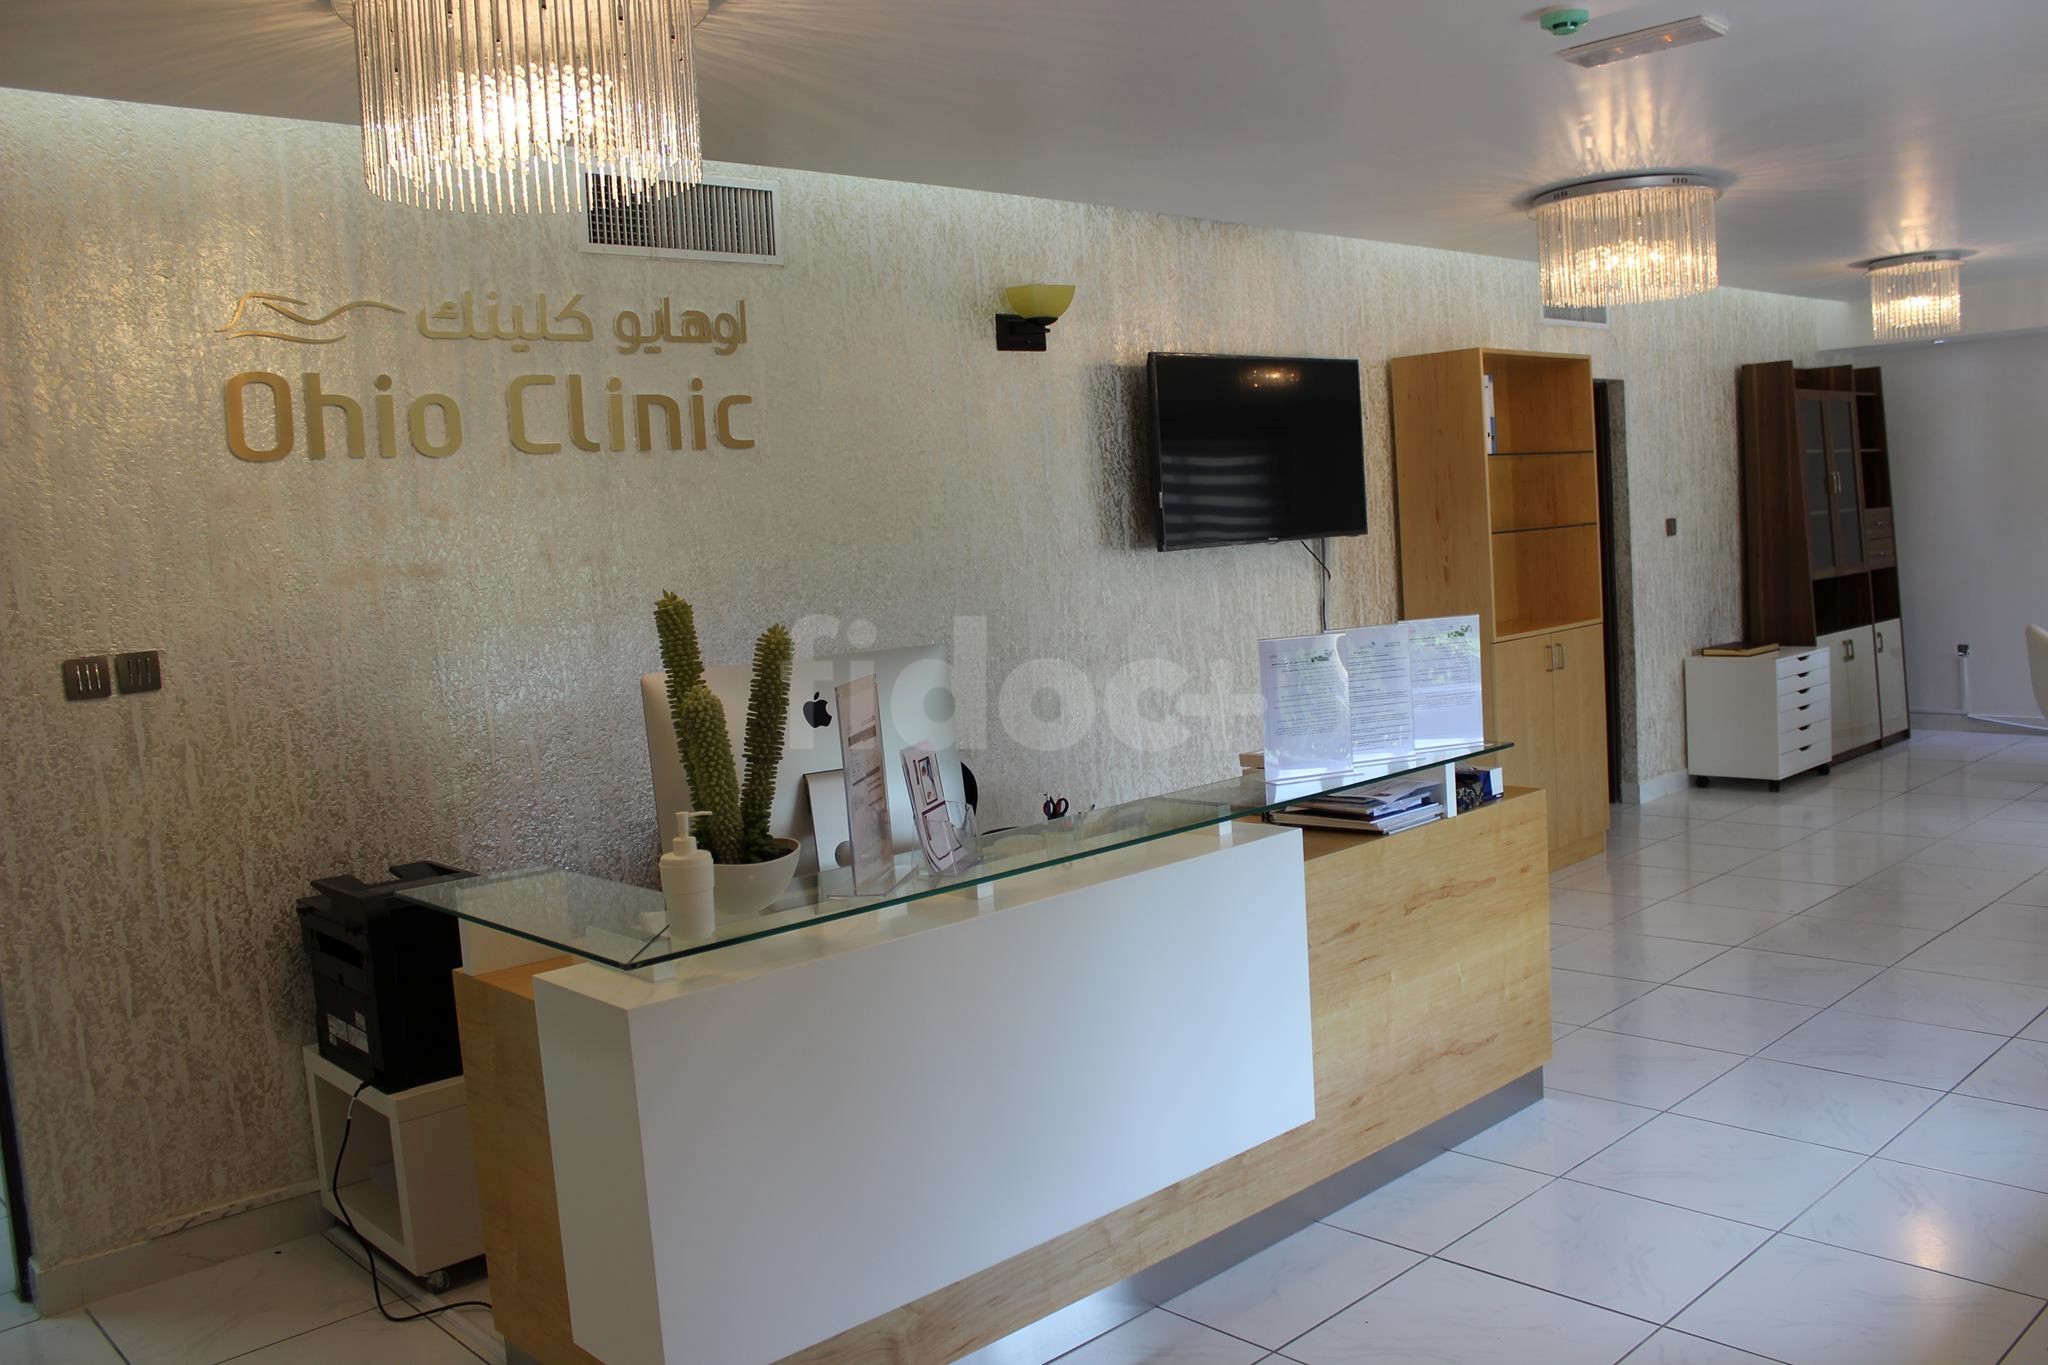 Ohio Clinic, Dubai